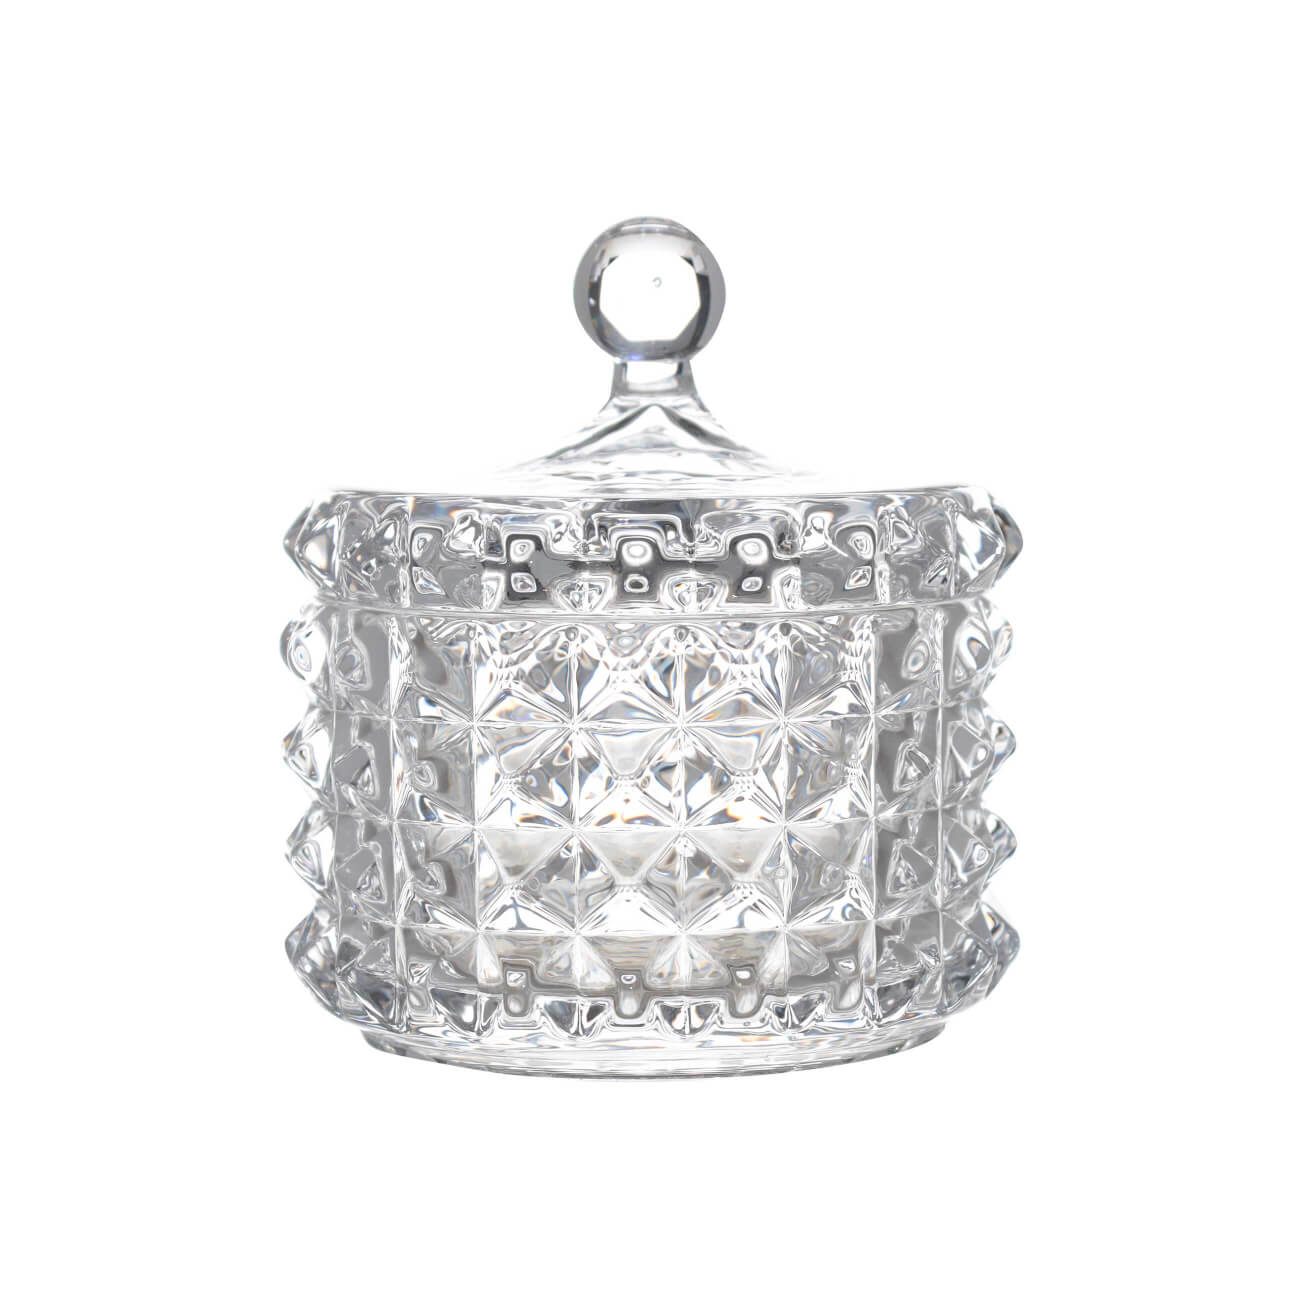 конфетница rogaska crown jewel 19 см с крышкой 273897 Конфетница, 10х11 см, с крышкой, стекло Р, Mosaic